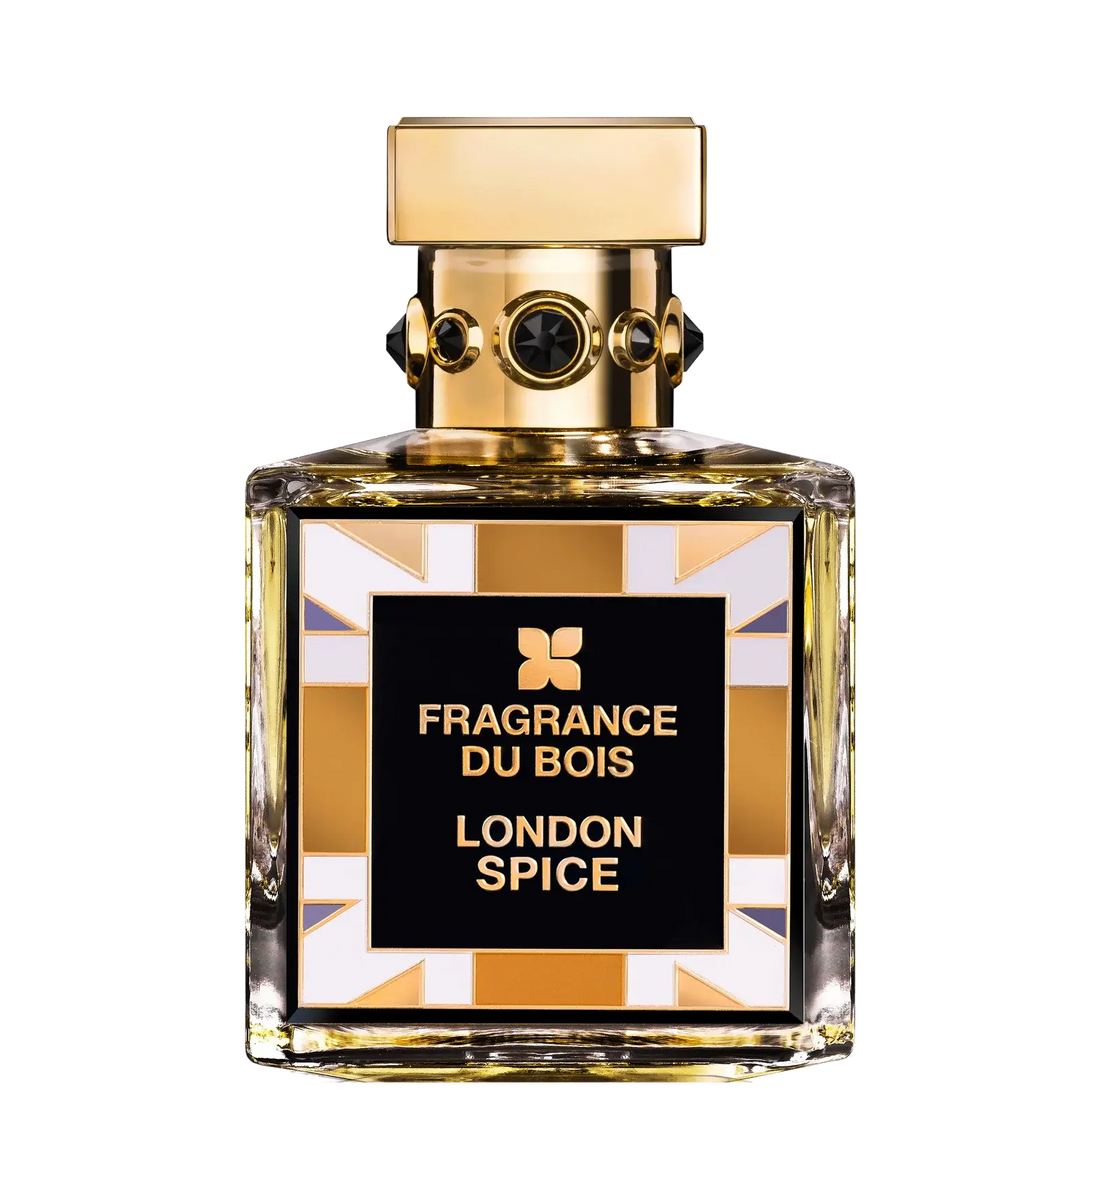 Fragrance du bois London Spice Eau De Parfum - 100 ml